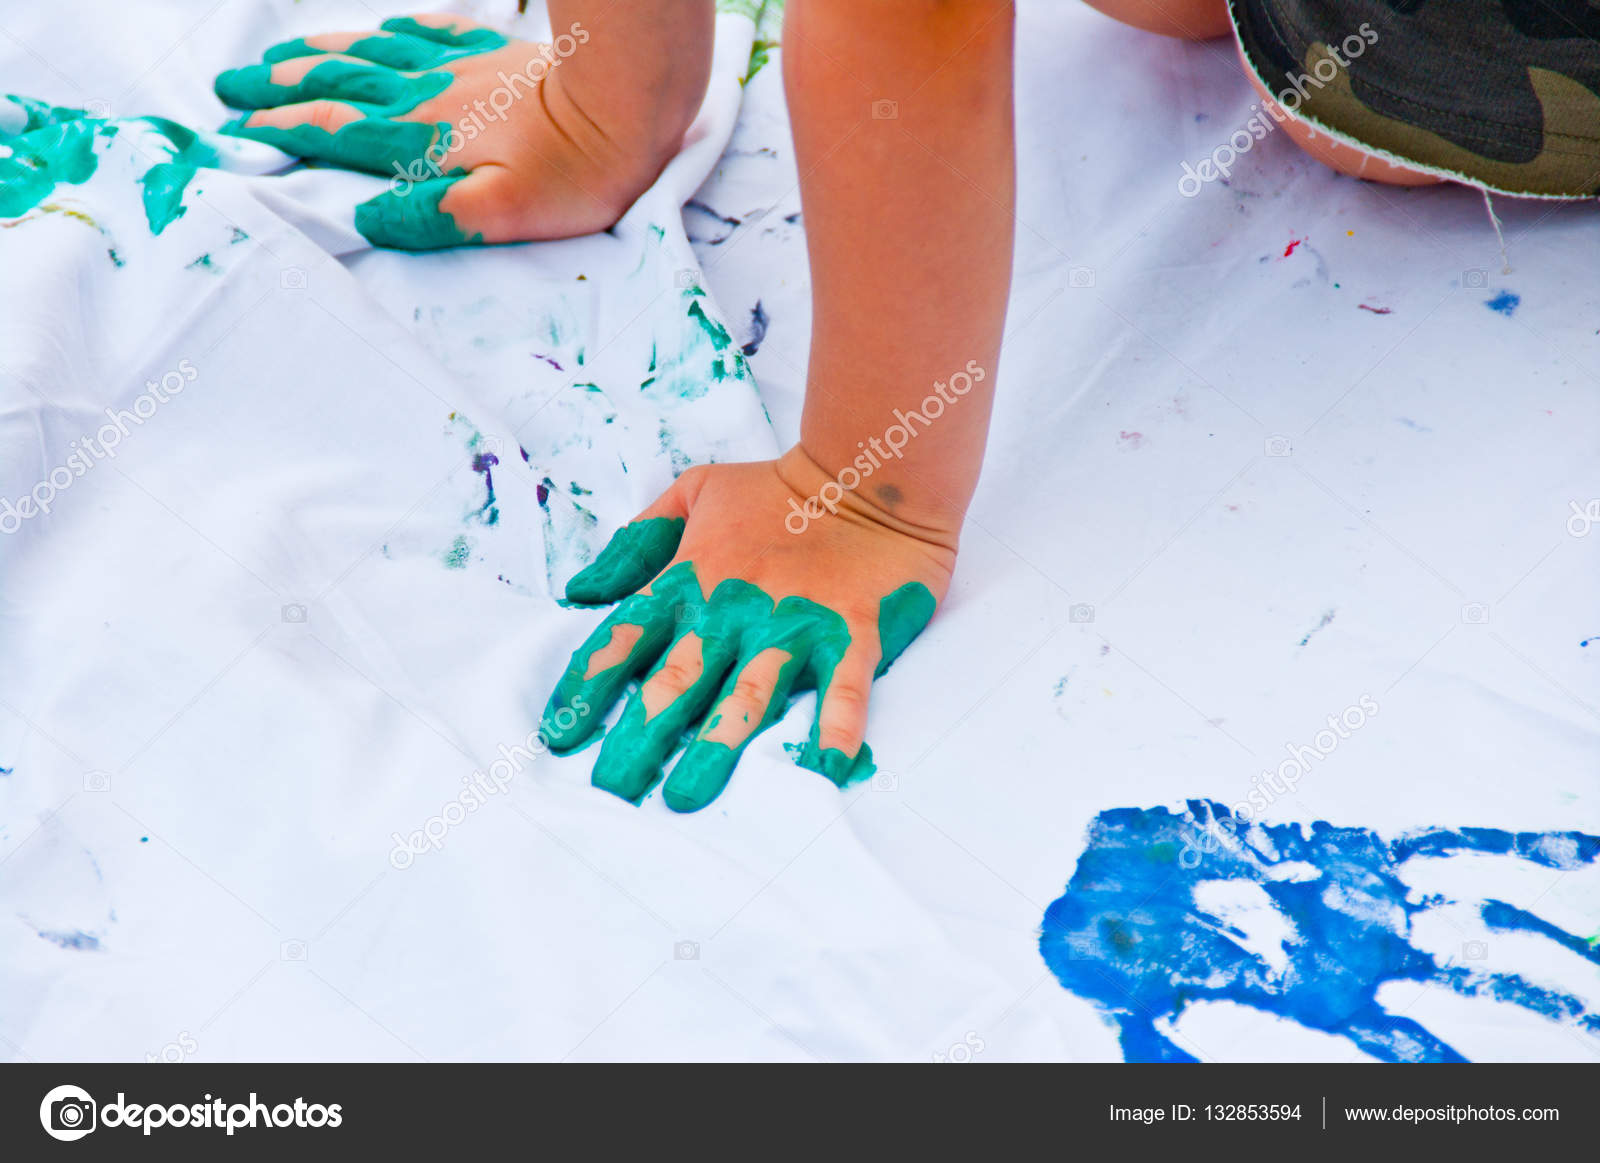 Bambini che giocano a fare i disegni colorati con le mani immerse in tintura colorata — Foto di pmmart